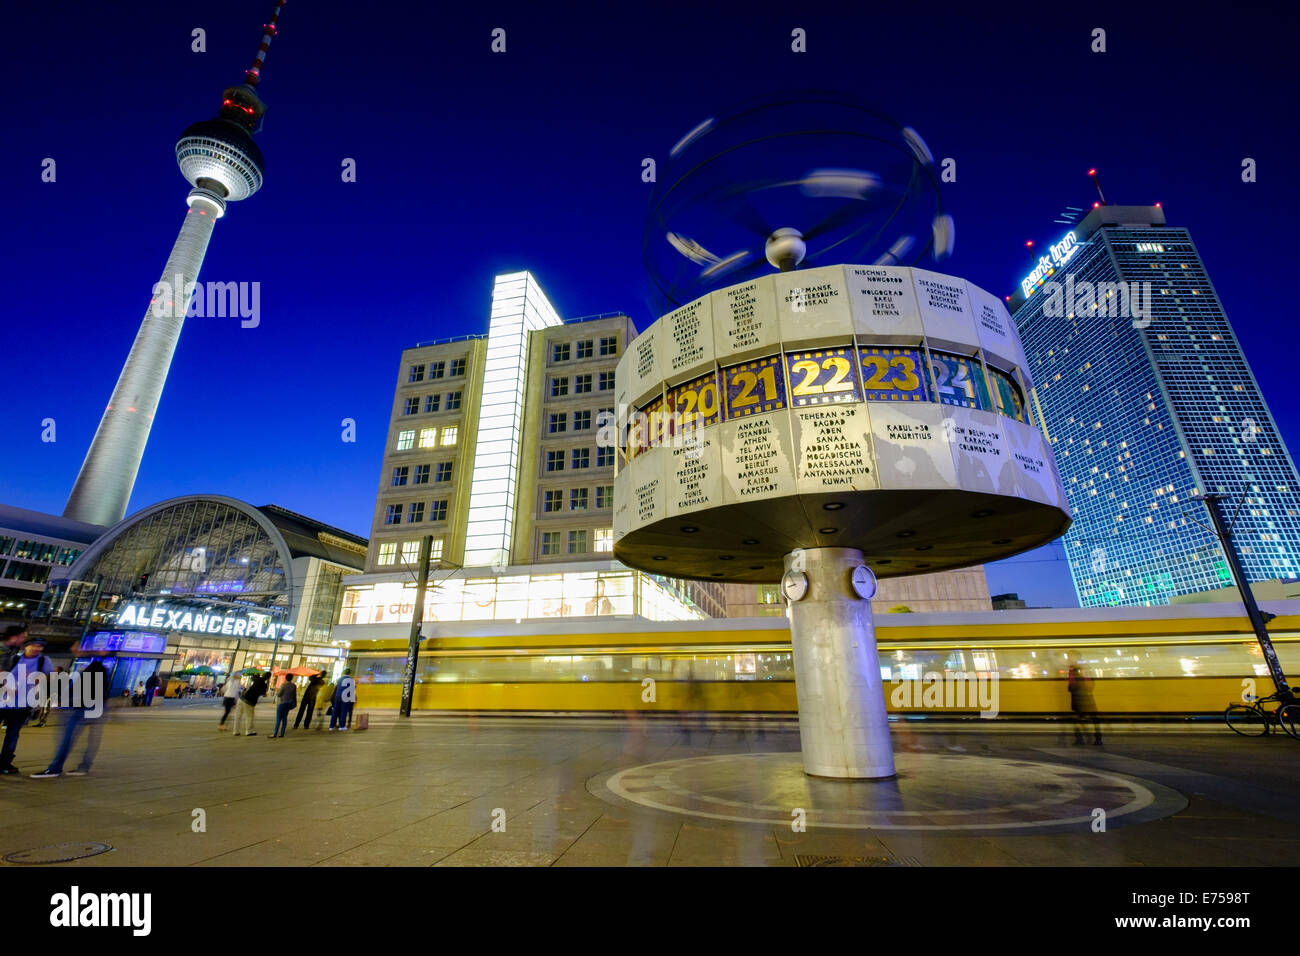 Vista notturna di Orologio mondiale e tram alla piazza Alexanderplatz in Mitte Berlino Germania Foto Stock